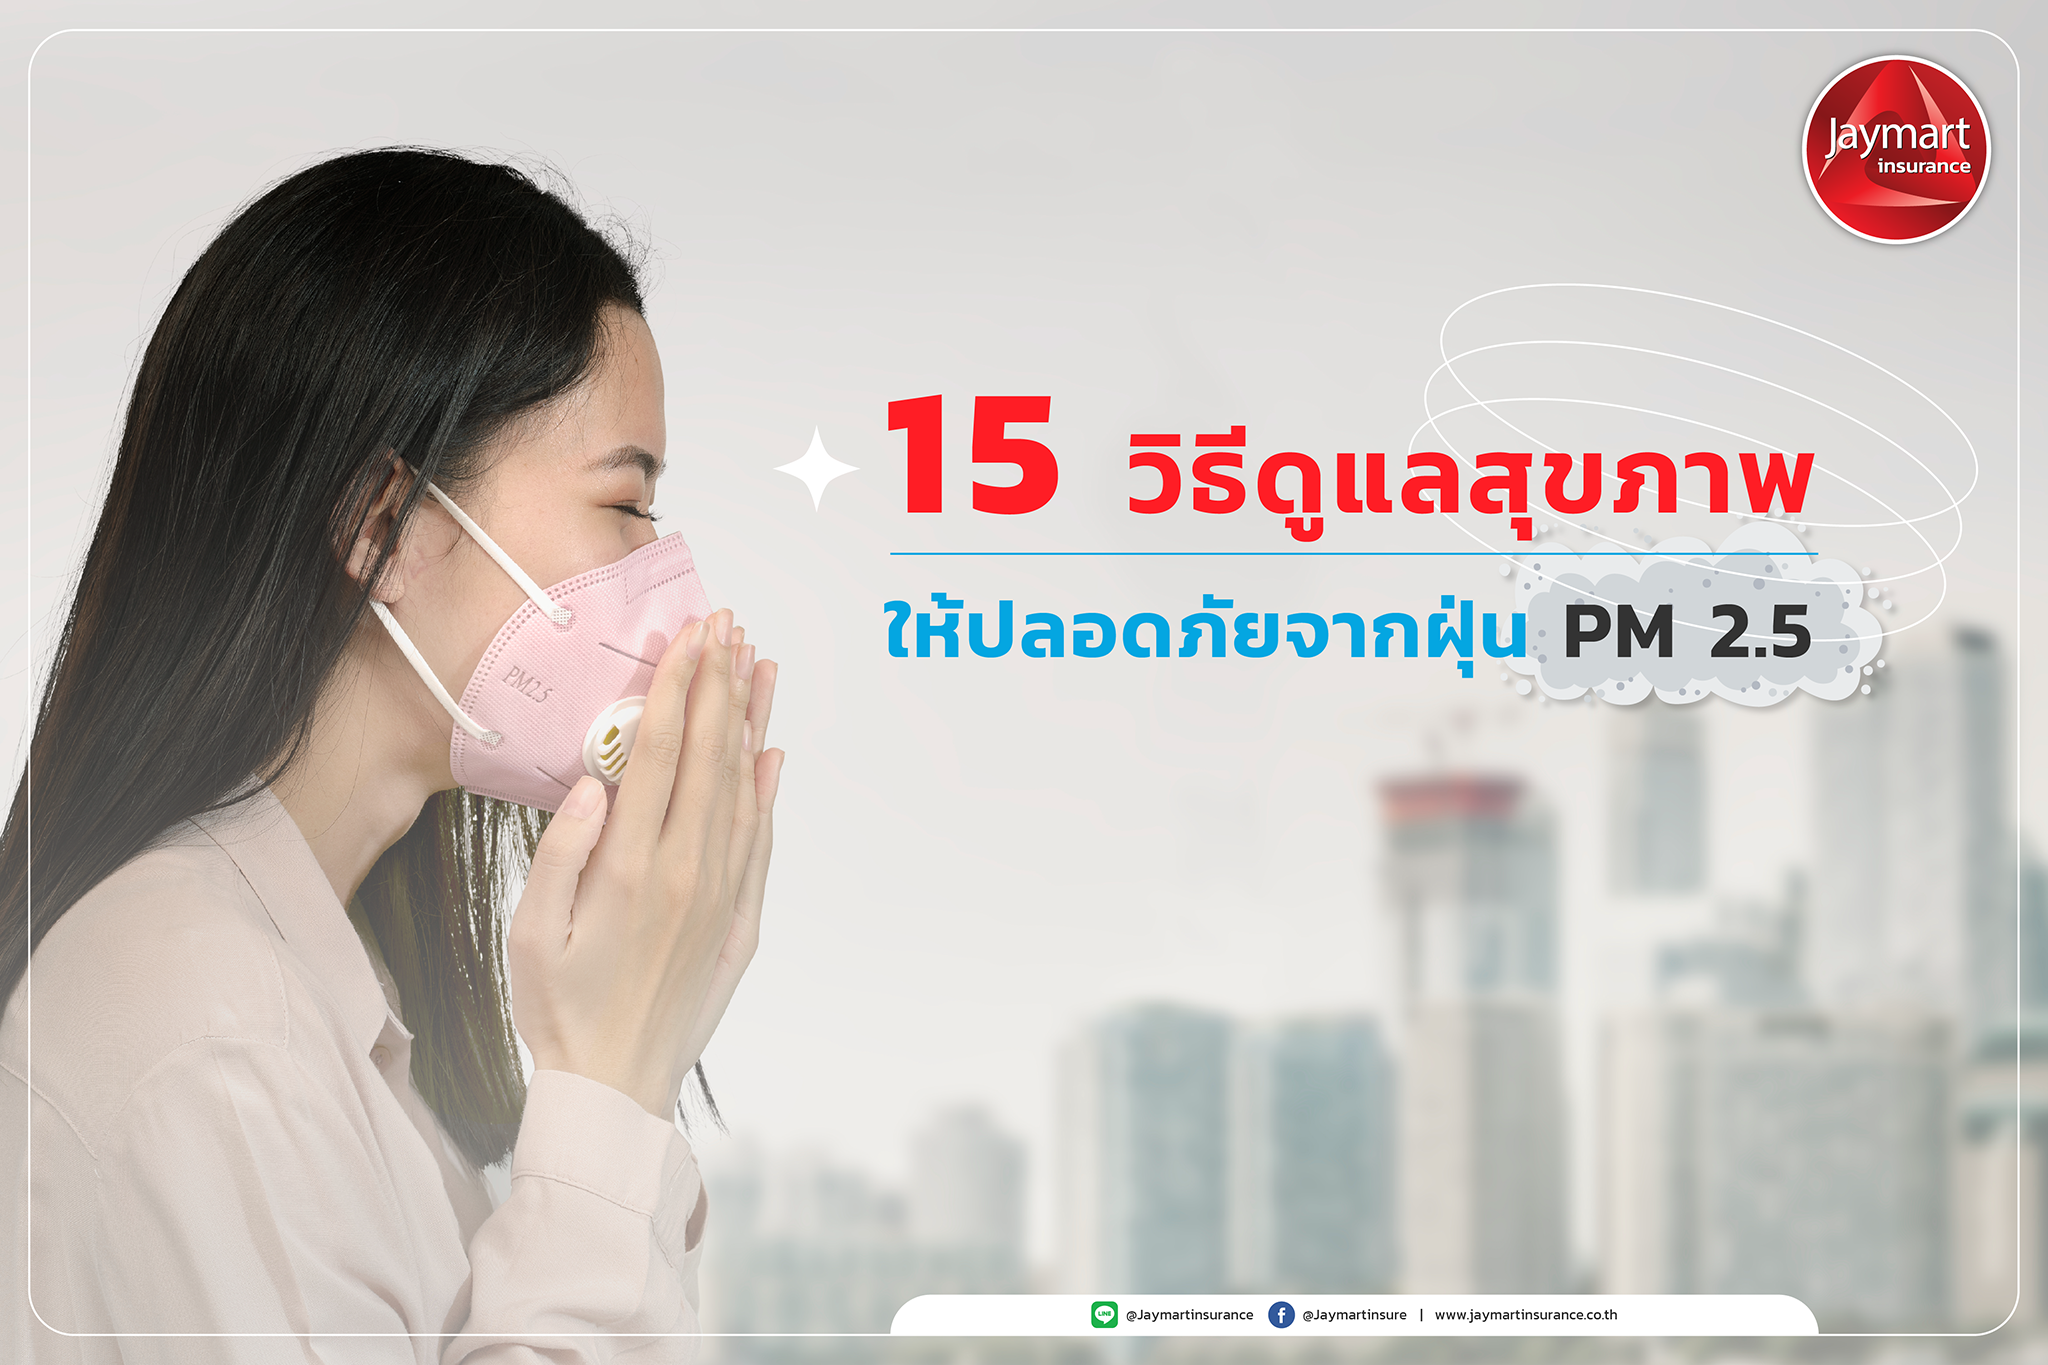 15 วิธีดูแลสุขภาพ ให้ปลอดภัยจากฝุ่น PM 2.5